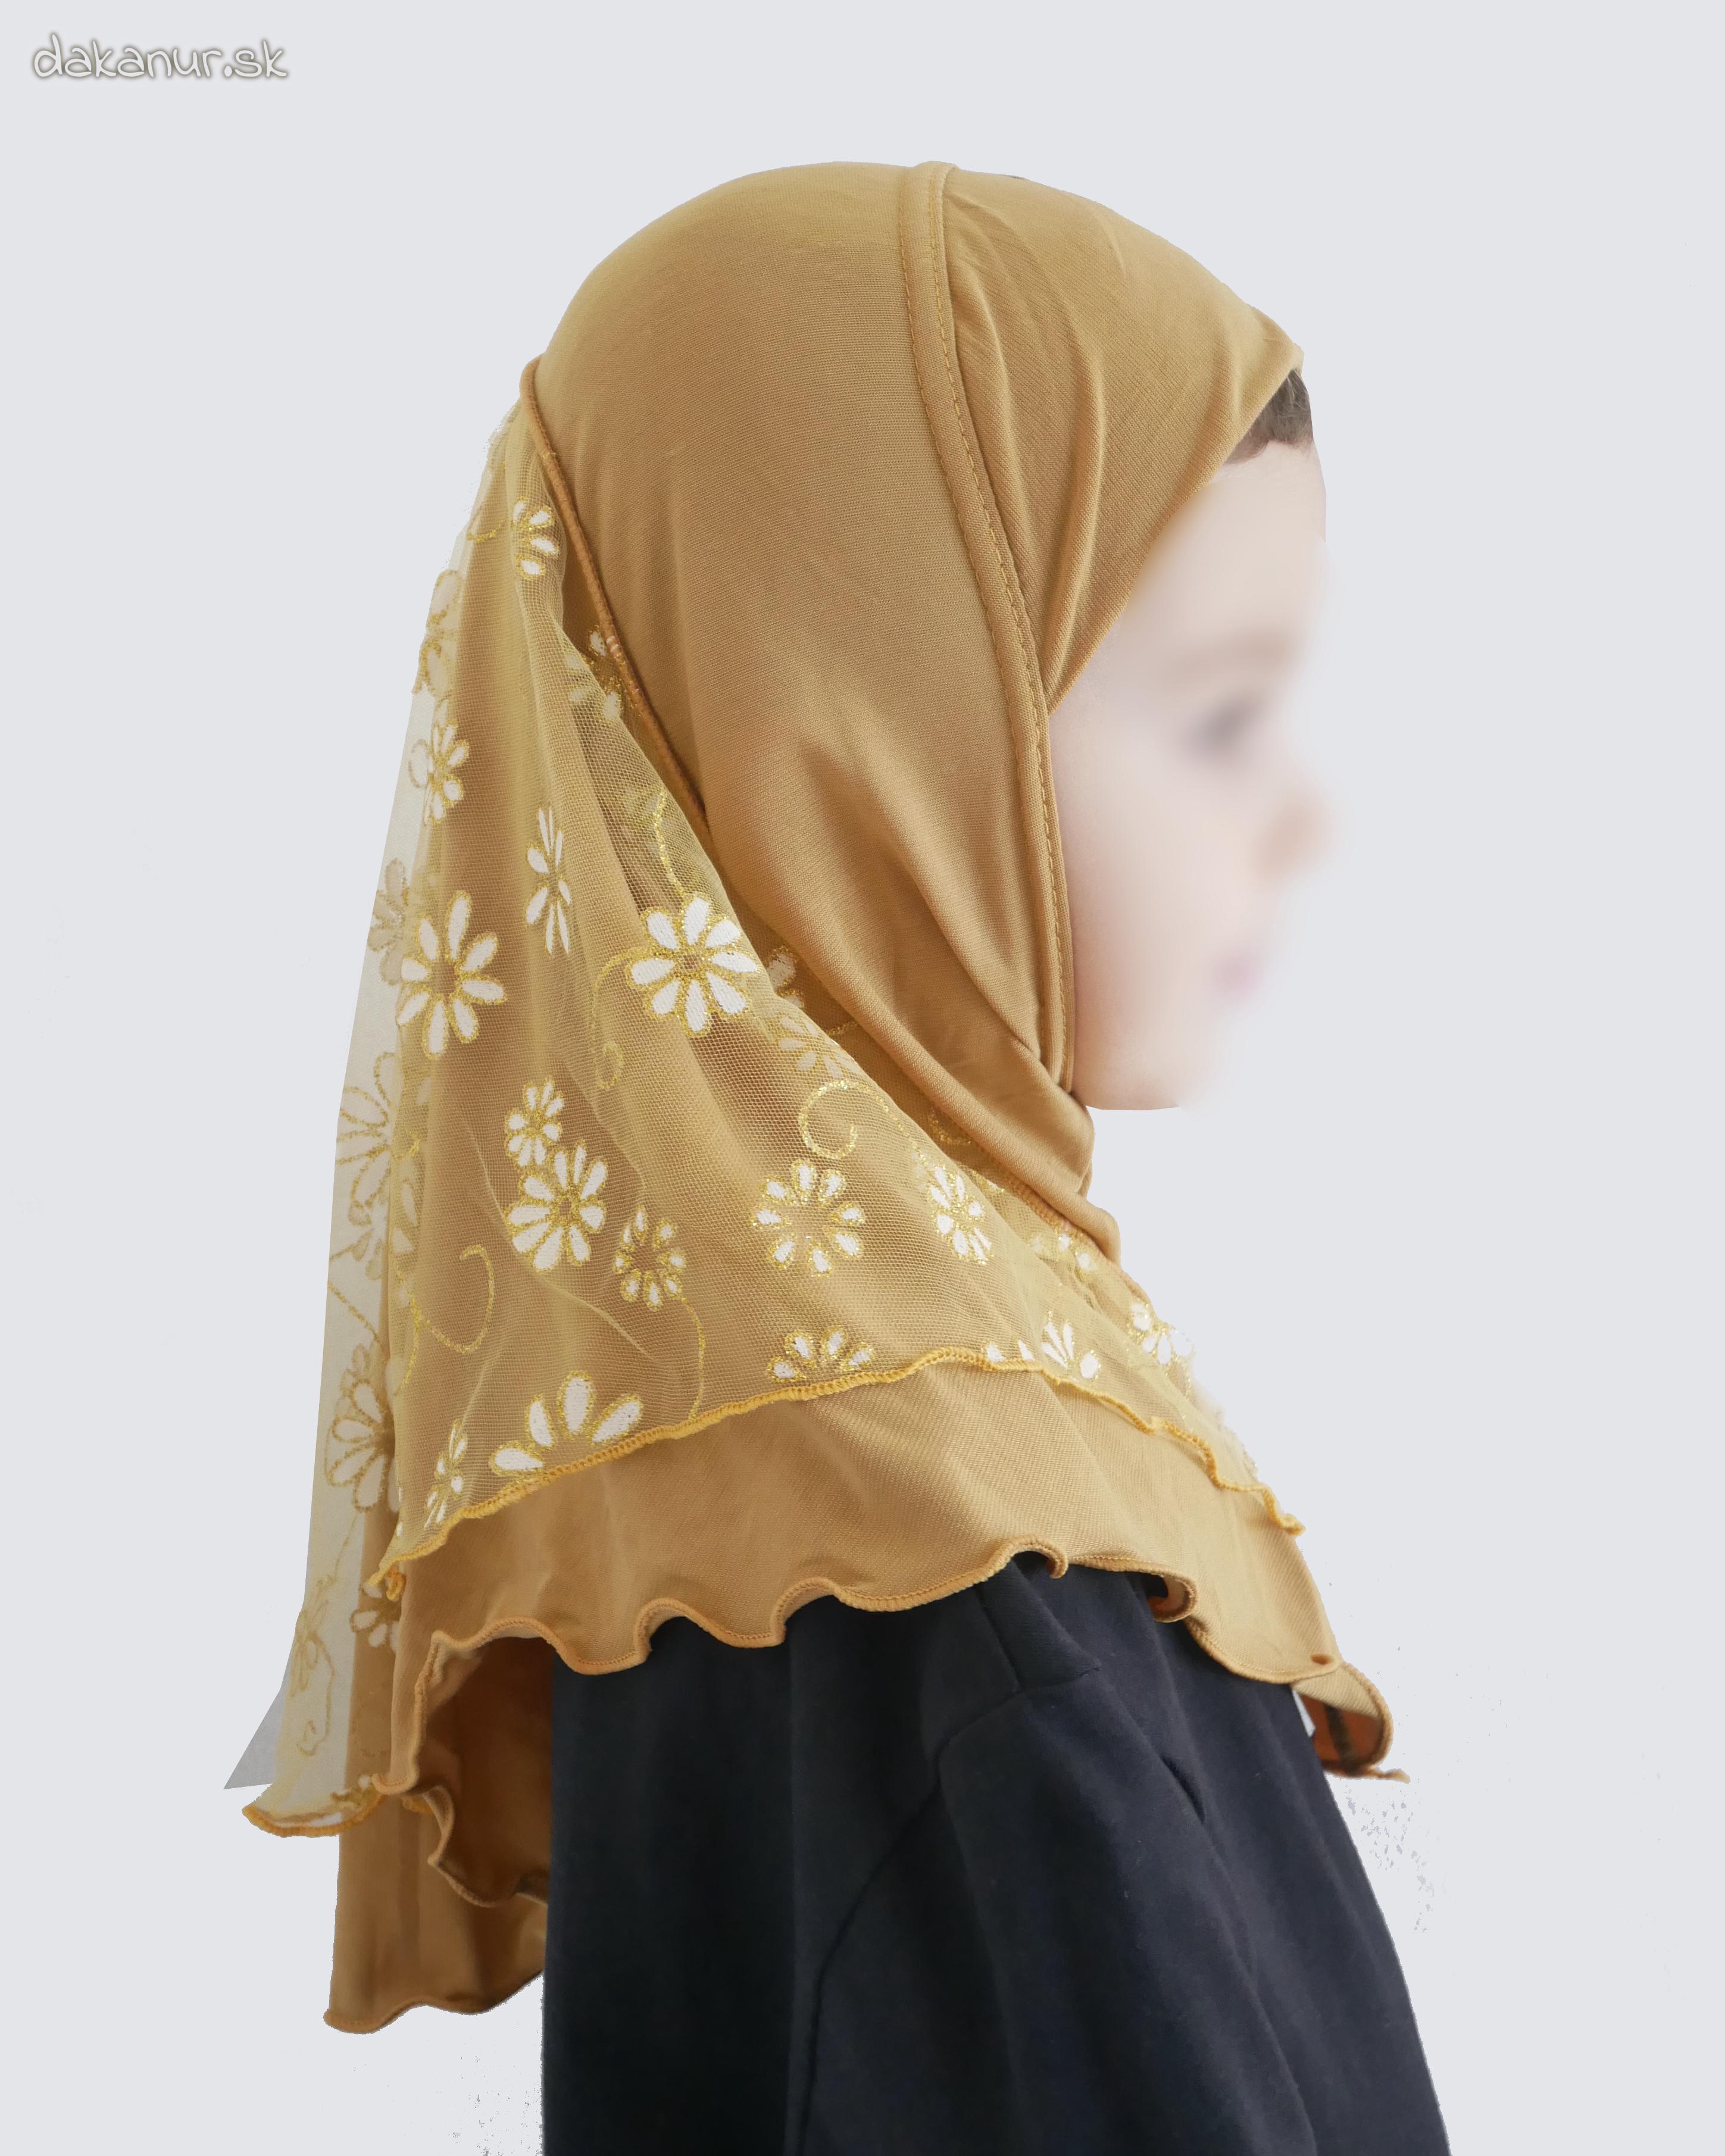 Detský zlatý hijáb s kvietkovanou potlačou